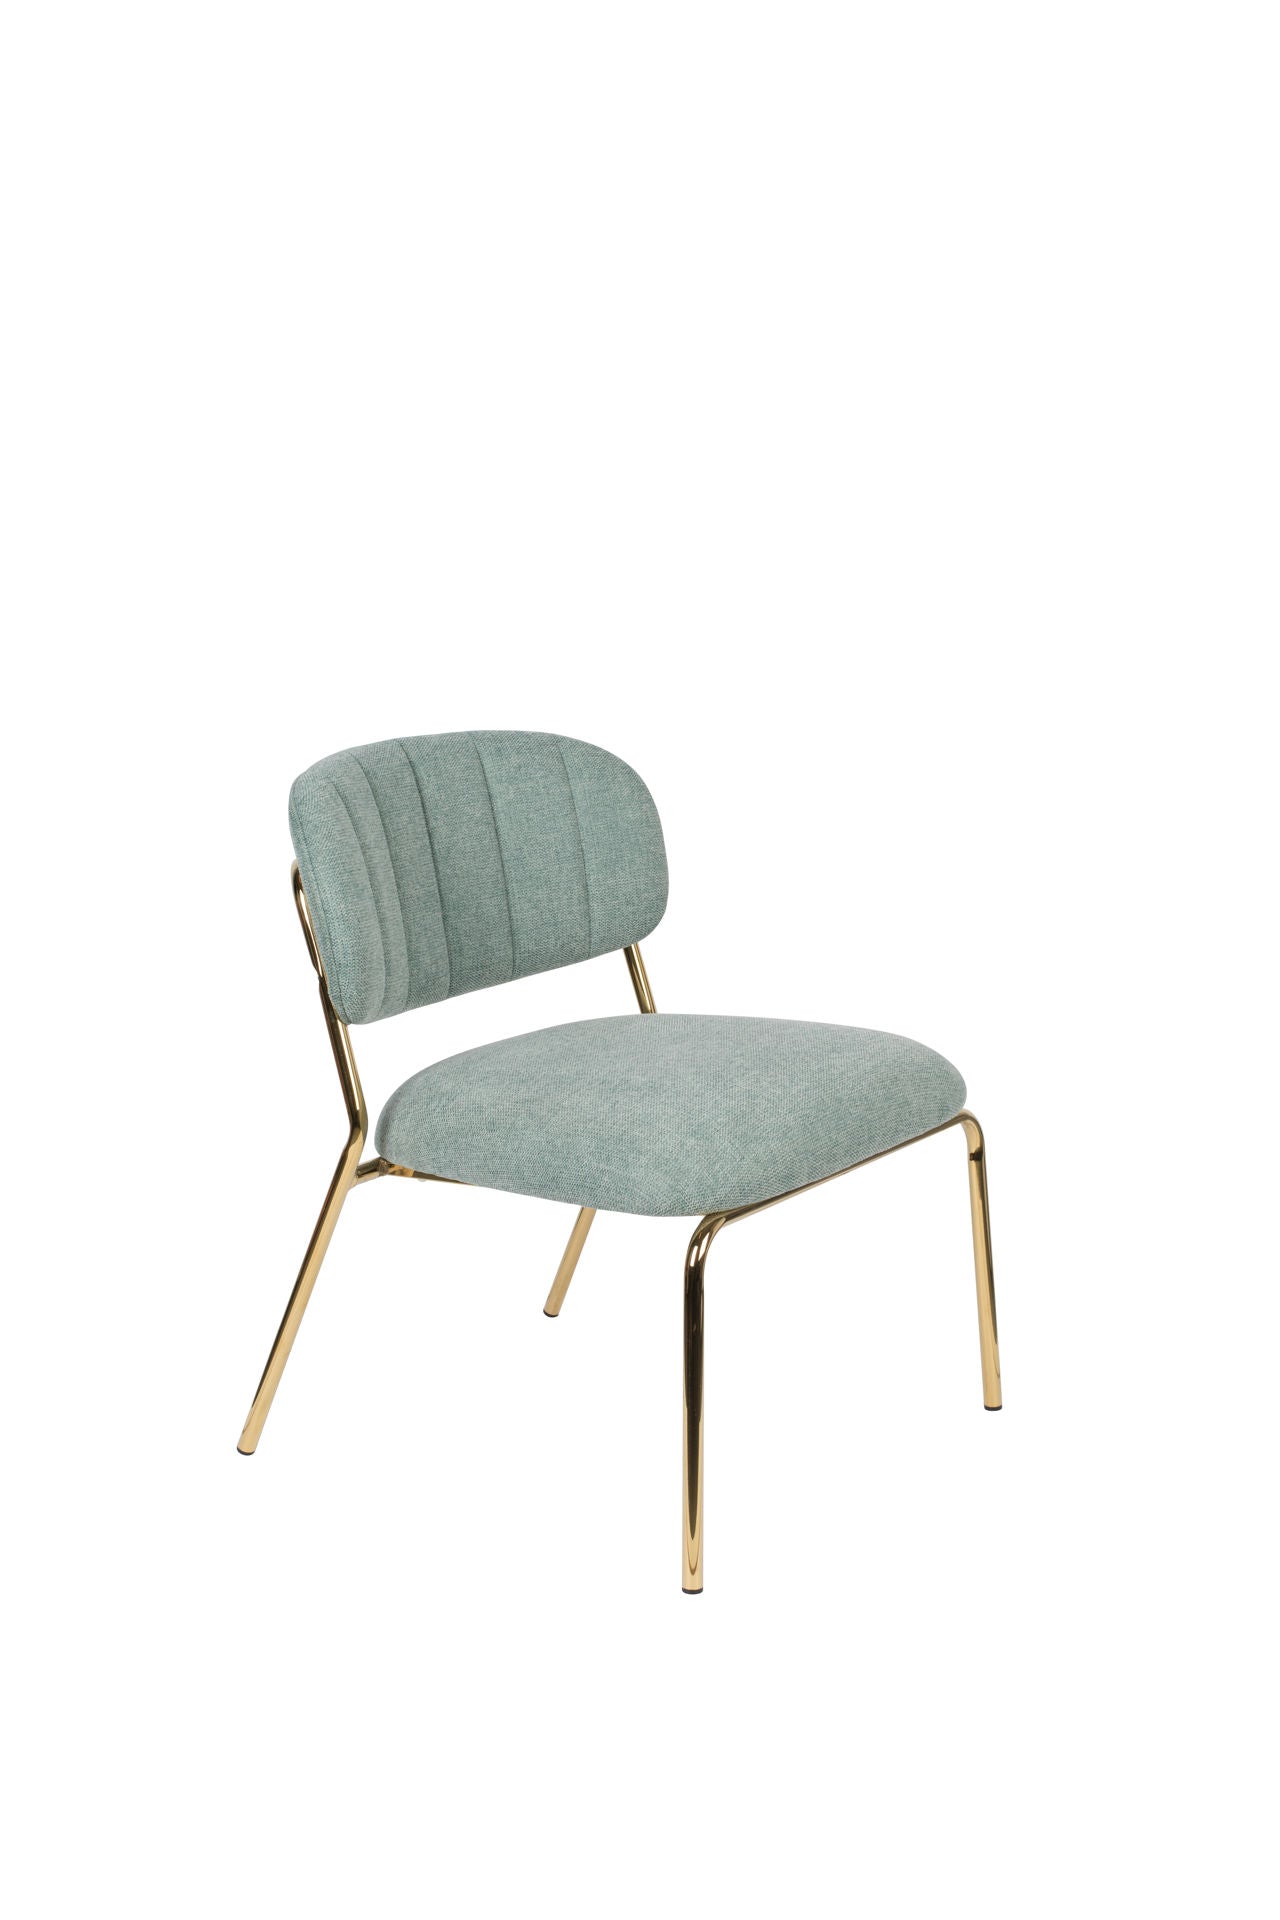 Chaise longue Nancy's Diamond Springs - Industriel -Vert clair - Polyester, Contreplaqué, Acier - 60 cm x 56 cm x 68 cm